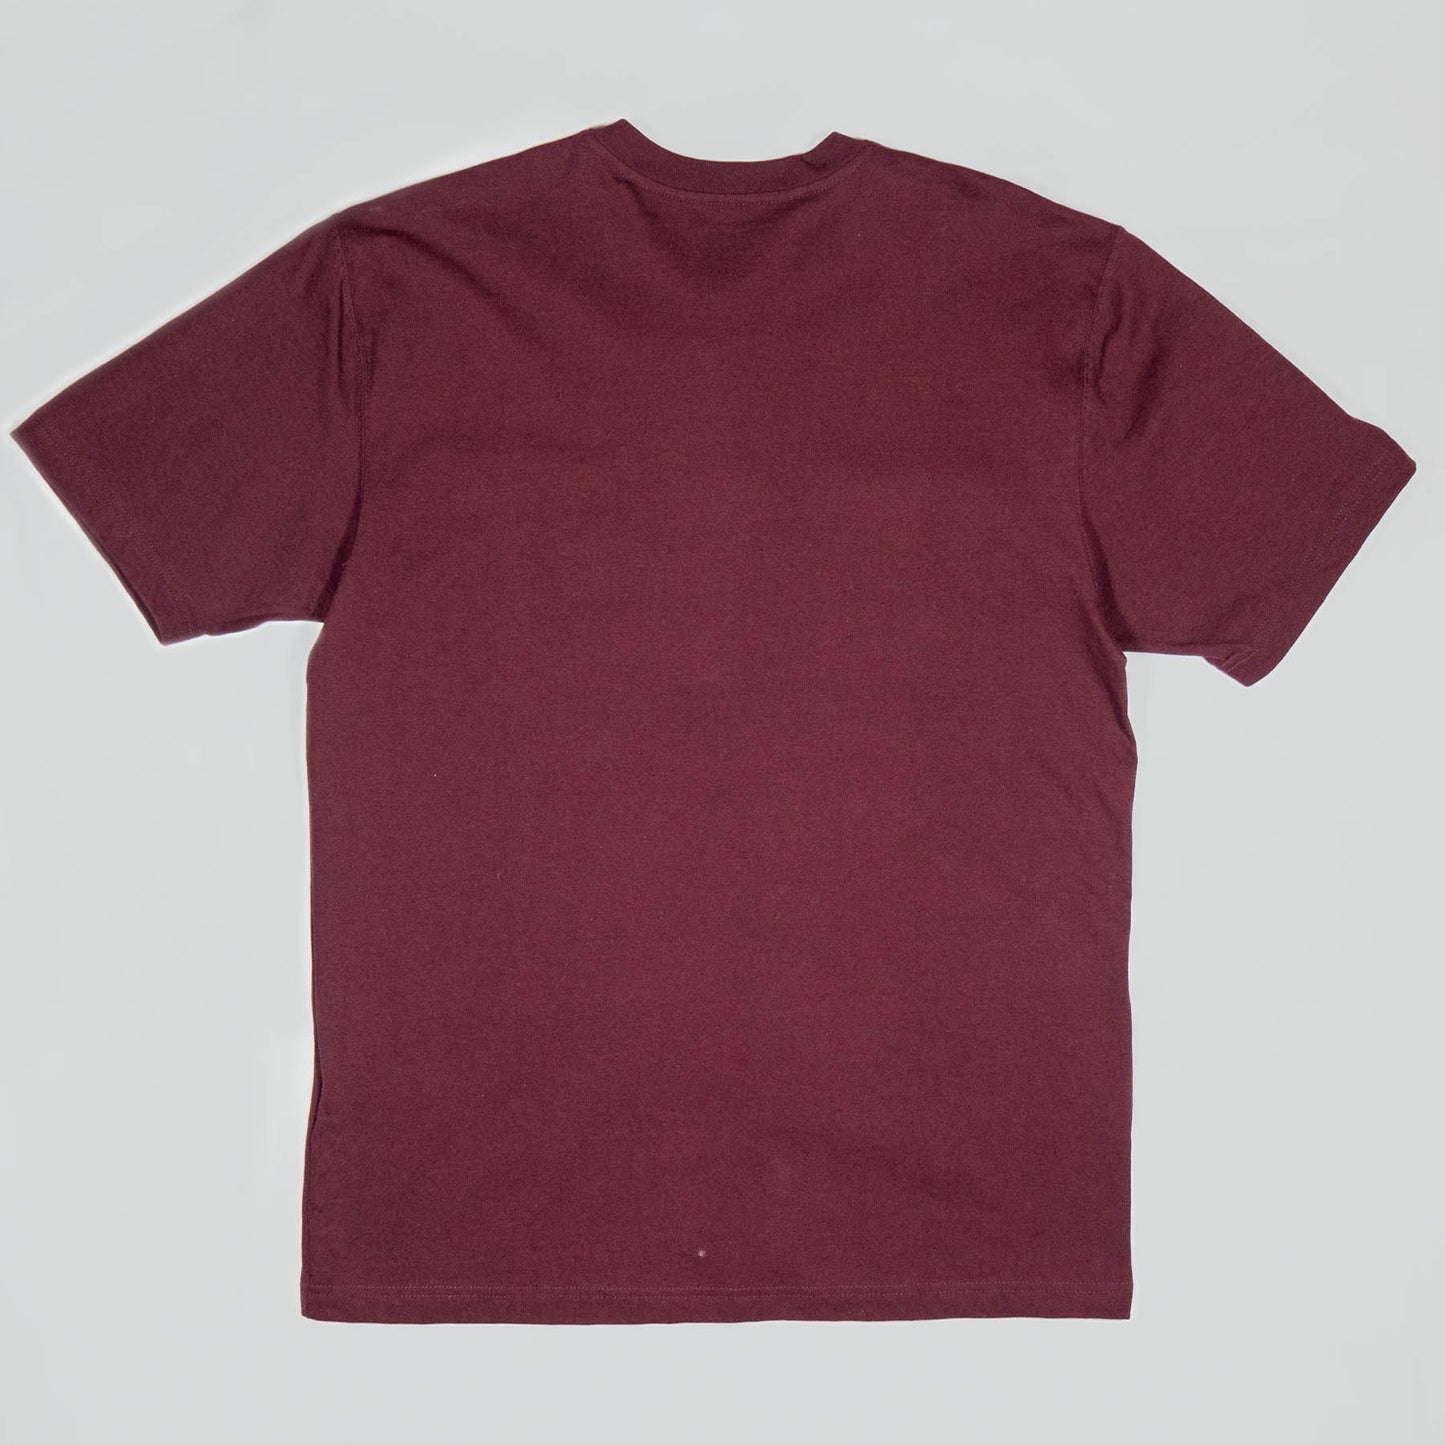 Carhartt - Loose Fit Heavyweight Short-Sleeve Pocket Henley T-Shirt - Port